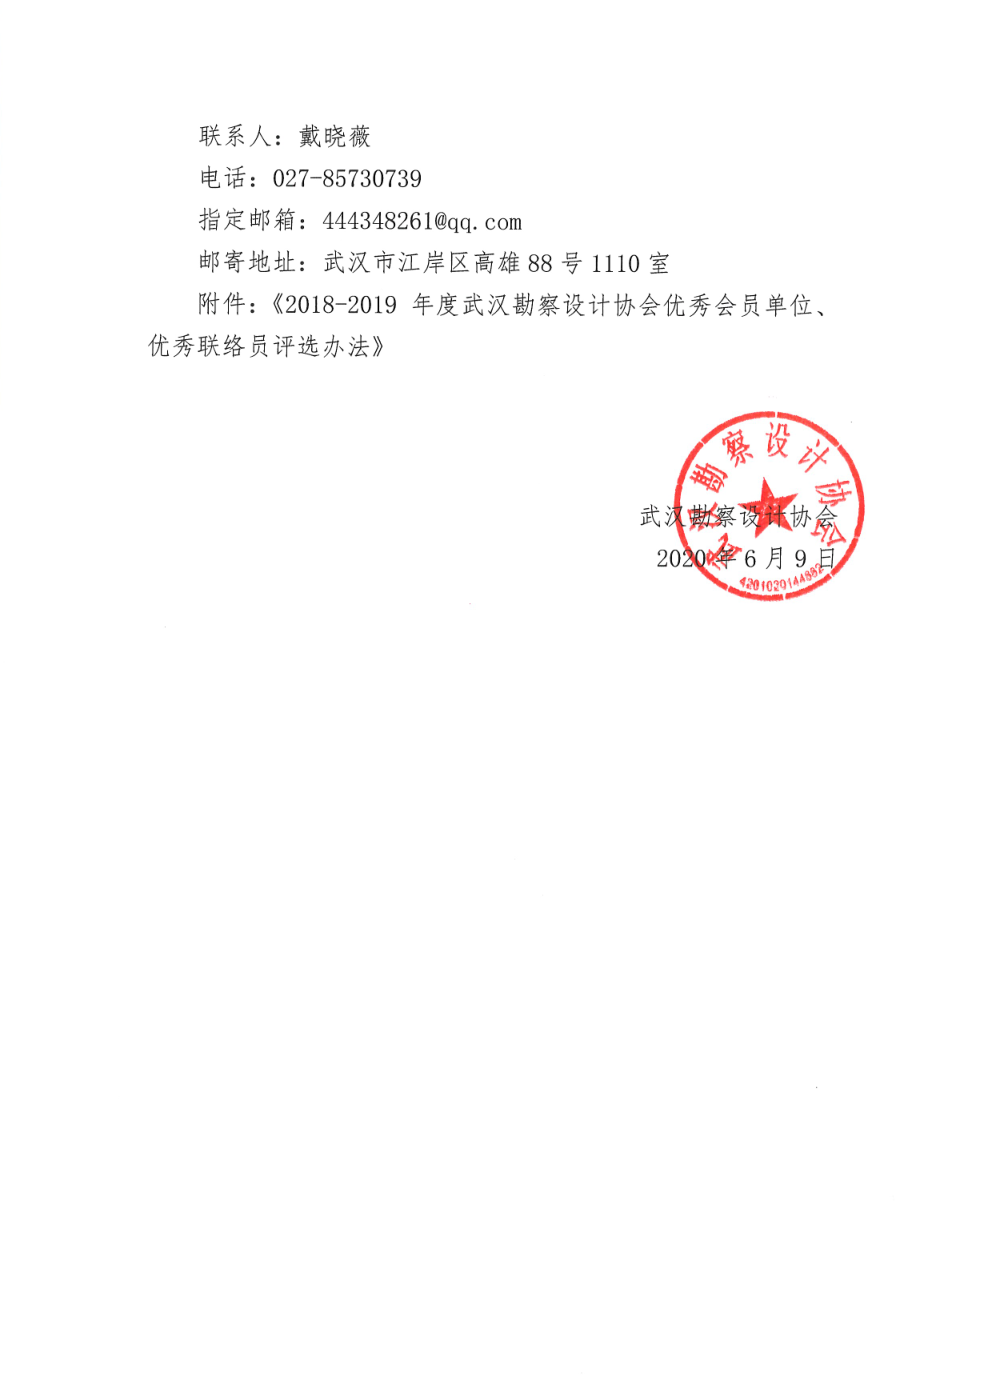 武汉勘察设计协会关于评选2018－2019年度优秀会员单位、优秀联络员的通知